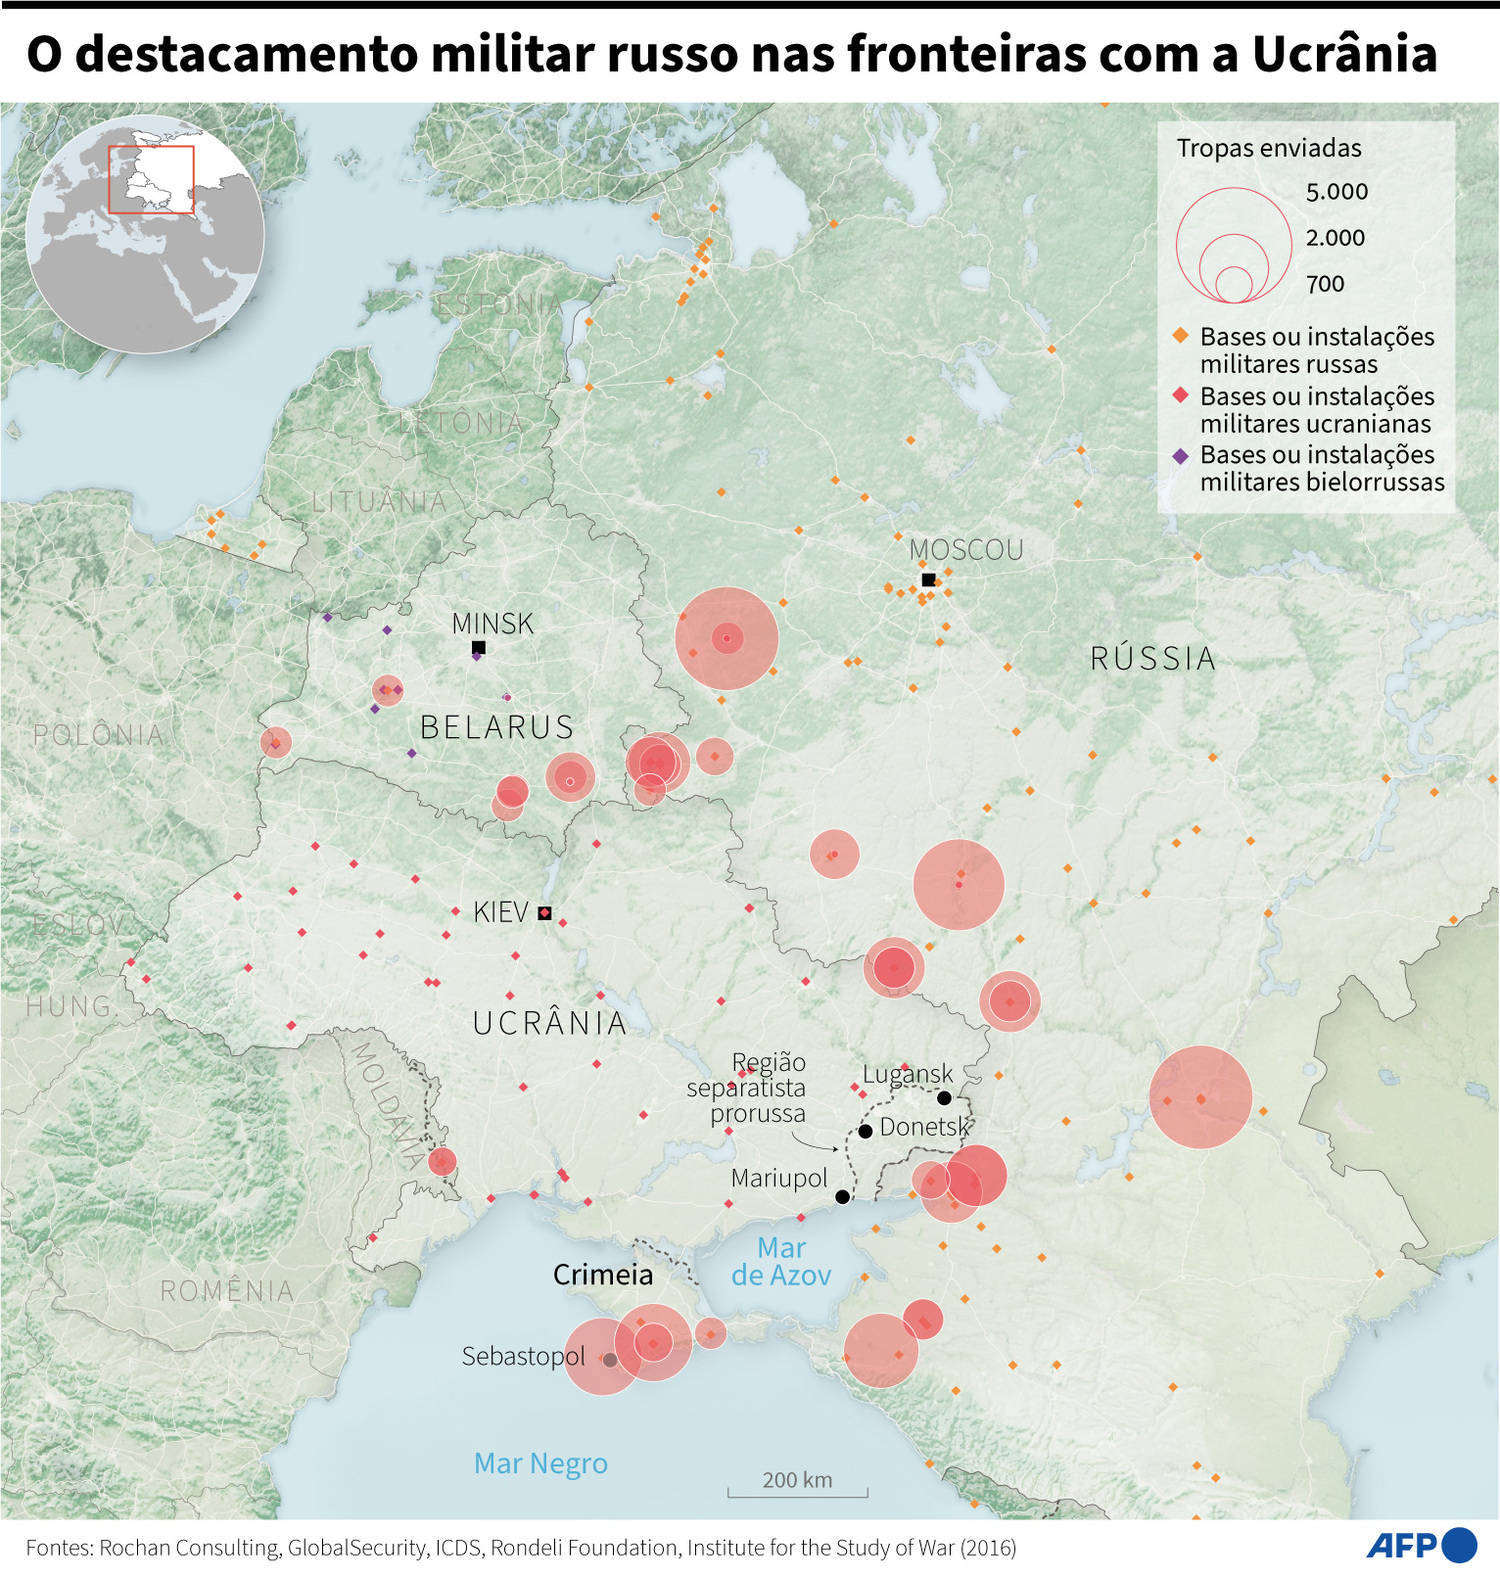 Mapa com o destacamento de tropas russas nas fronteiras com a Ucrânia e bases e instalações militares